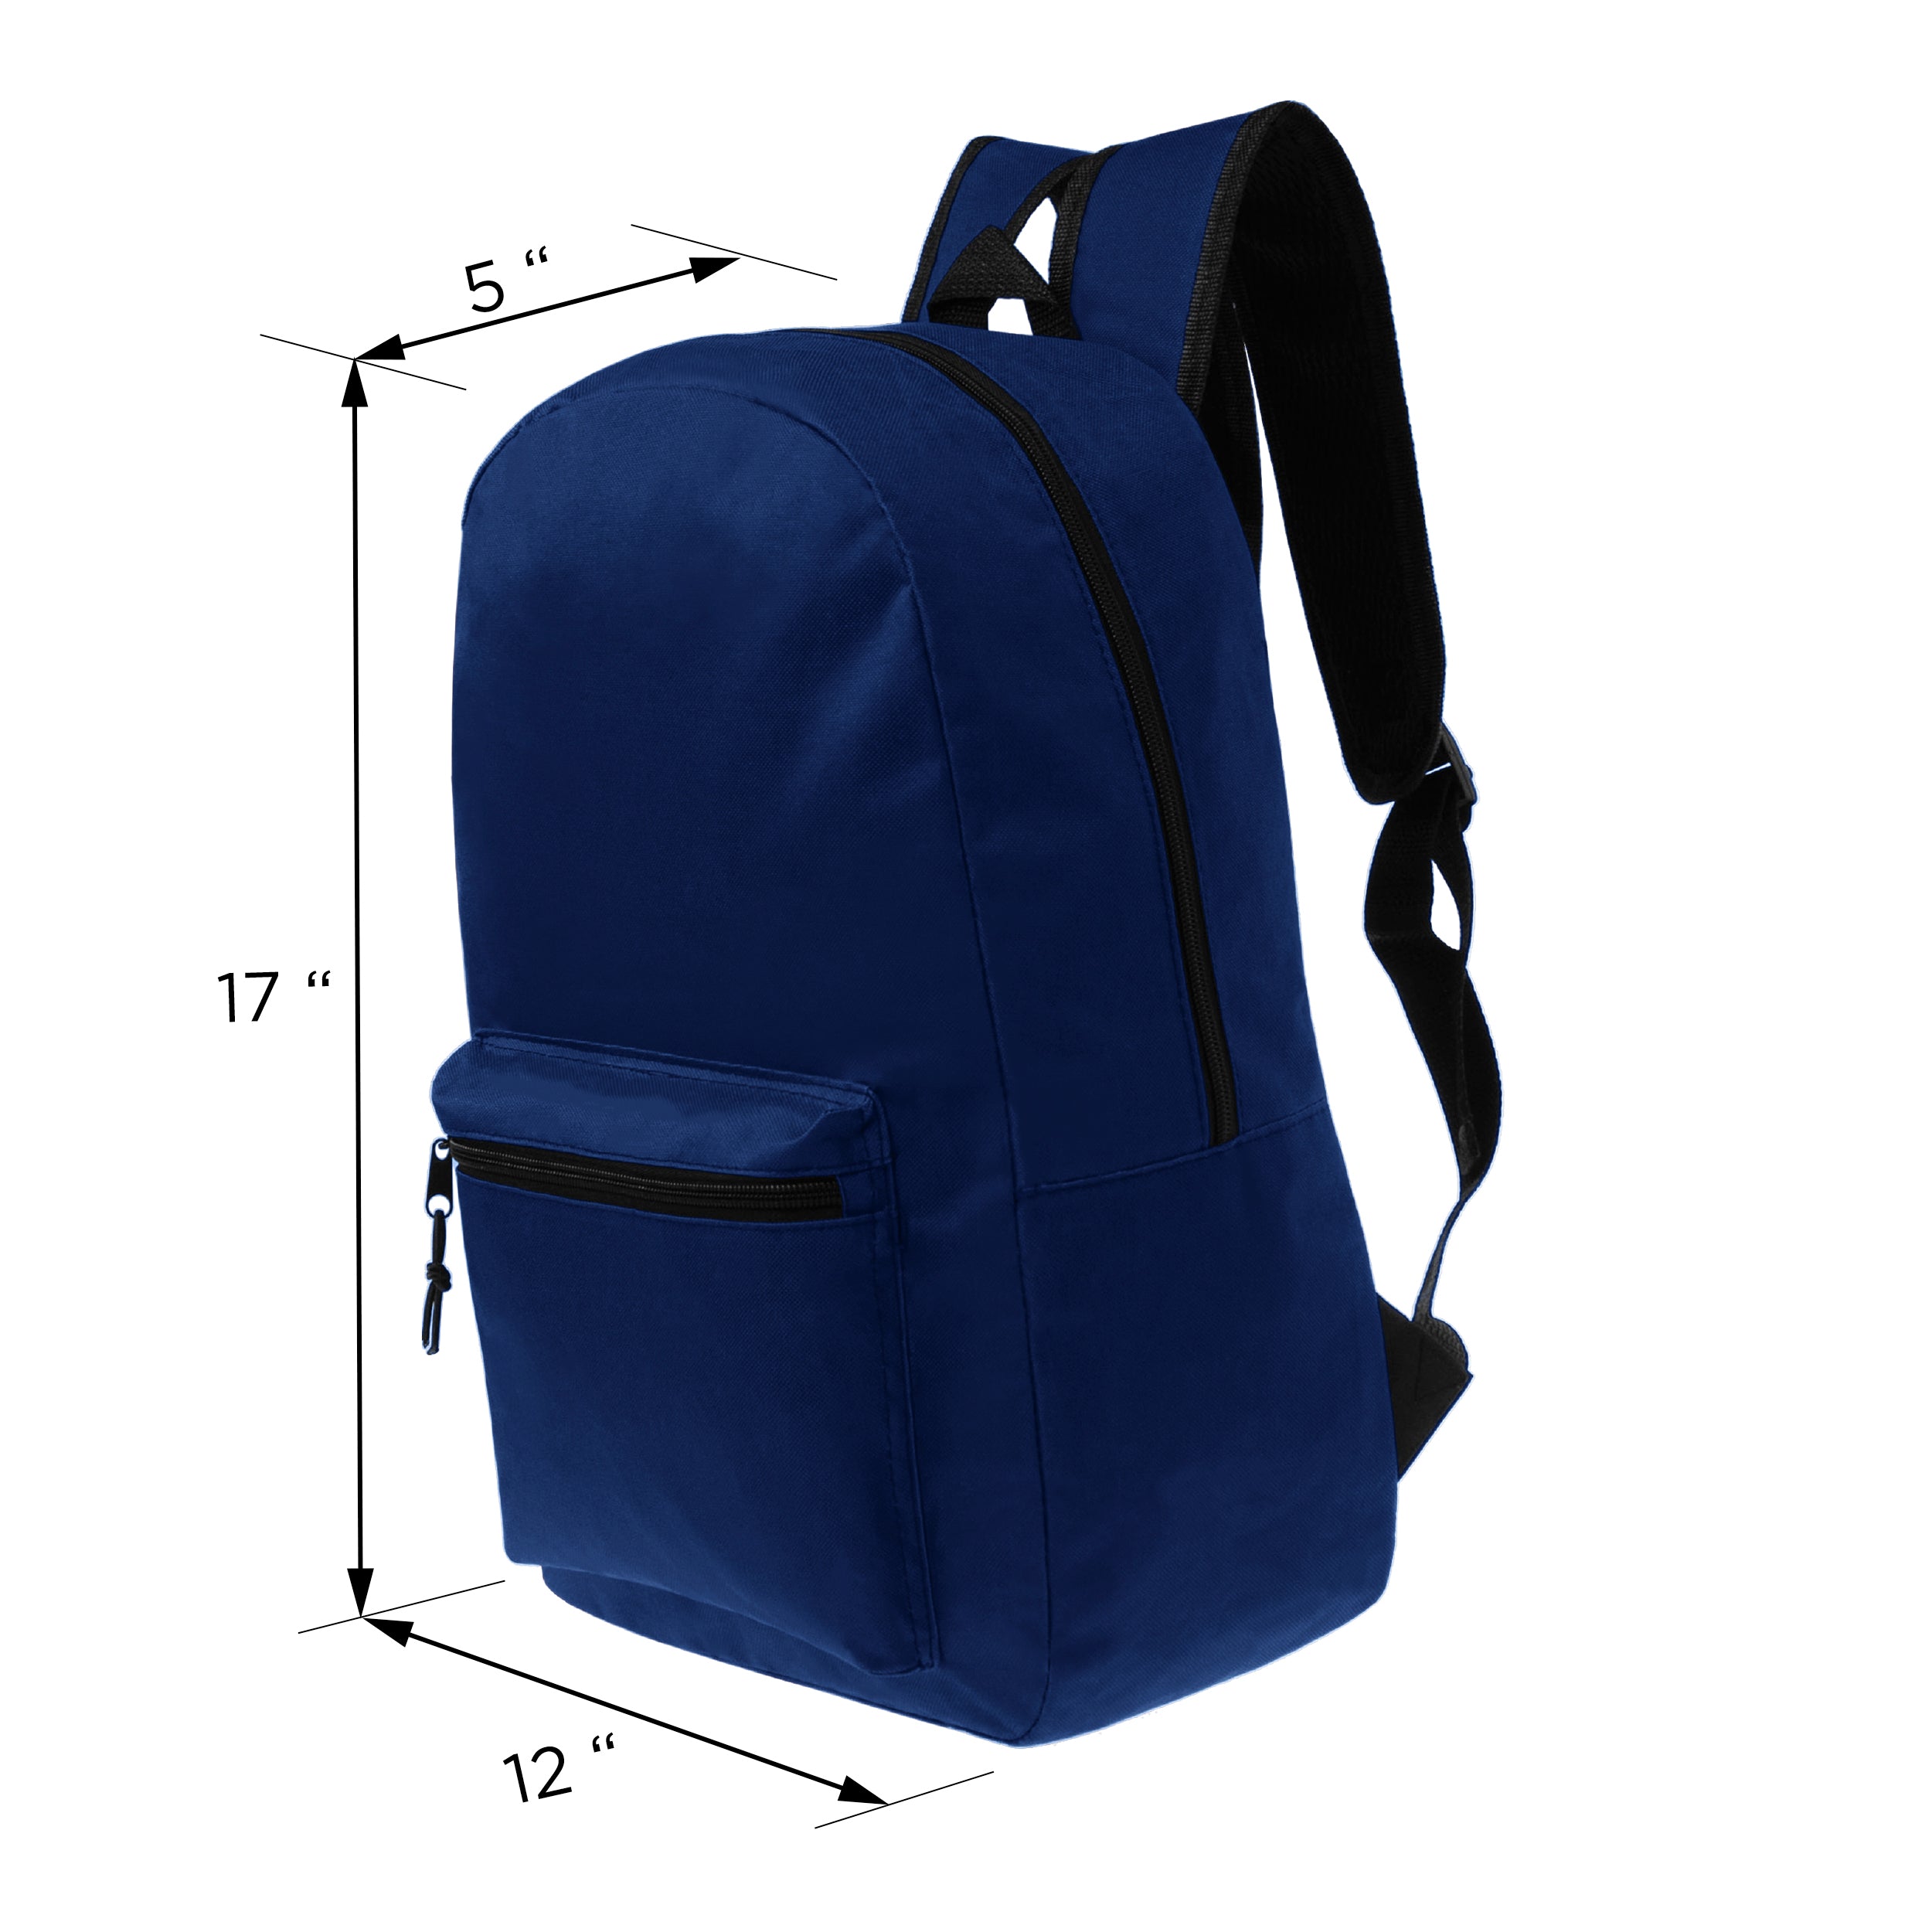 17" Kids Basic Wholesale Backpack in Navy - Bulk Case of 24 Backpacks